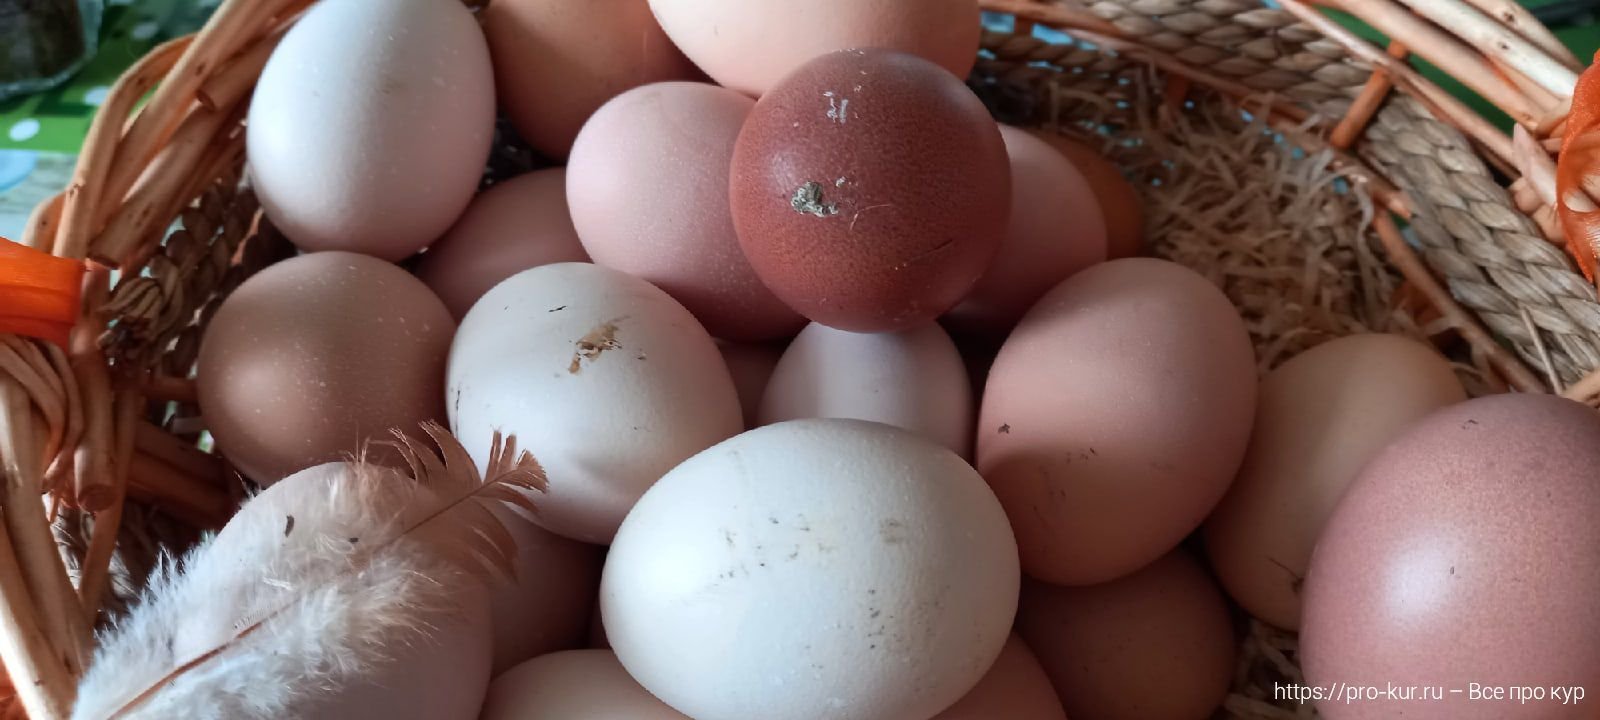 Можно ли мыть яйца перед хранением домашние. Можно ли курам несушкам давать яичную скорлупу. Как правильно мыть куриные яйца в домашних условиях.